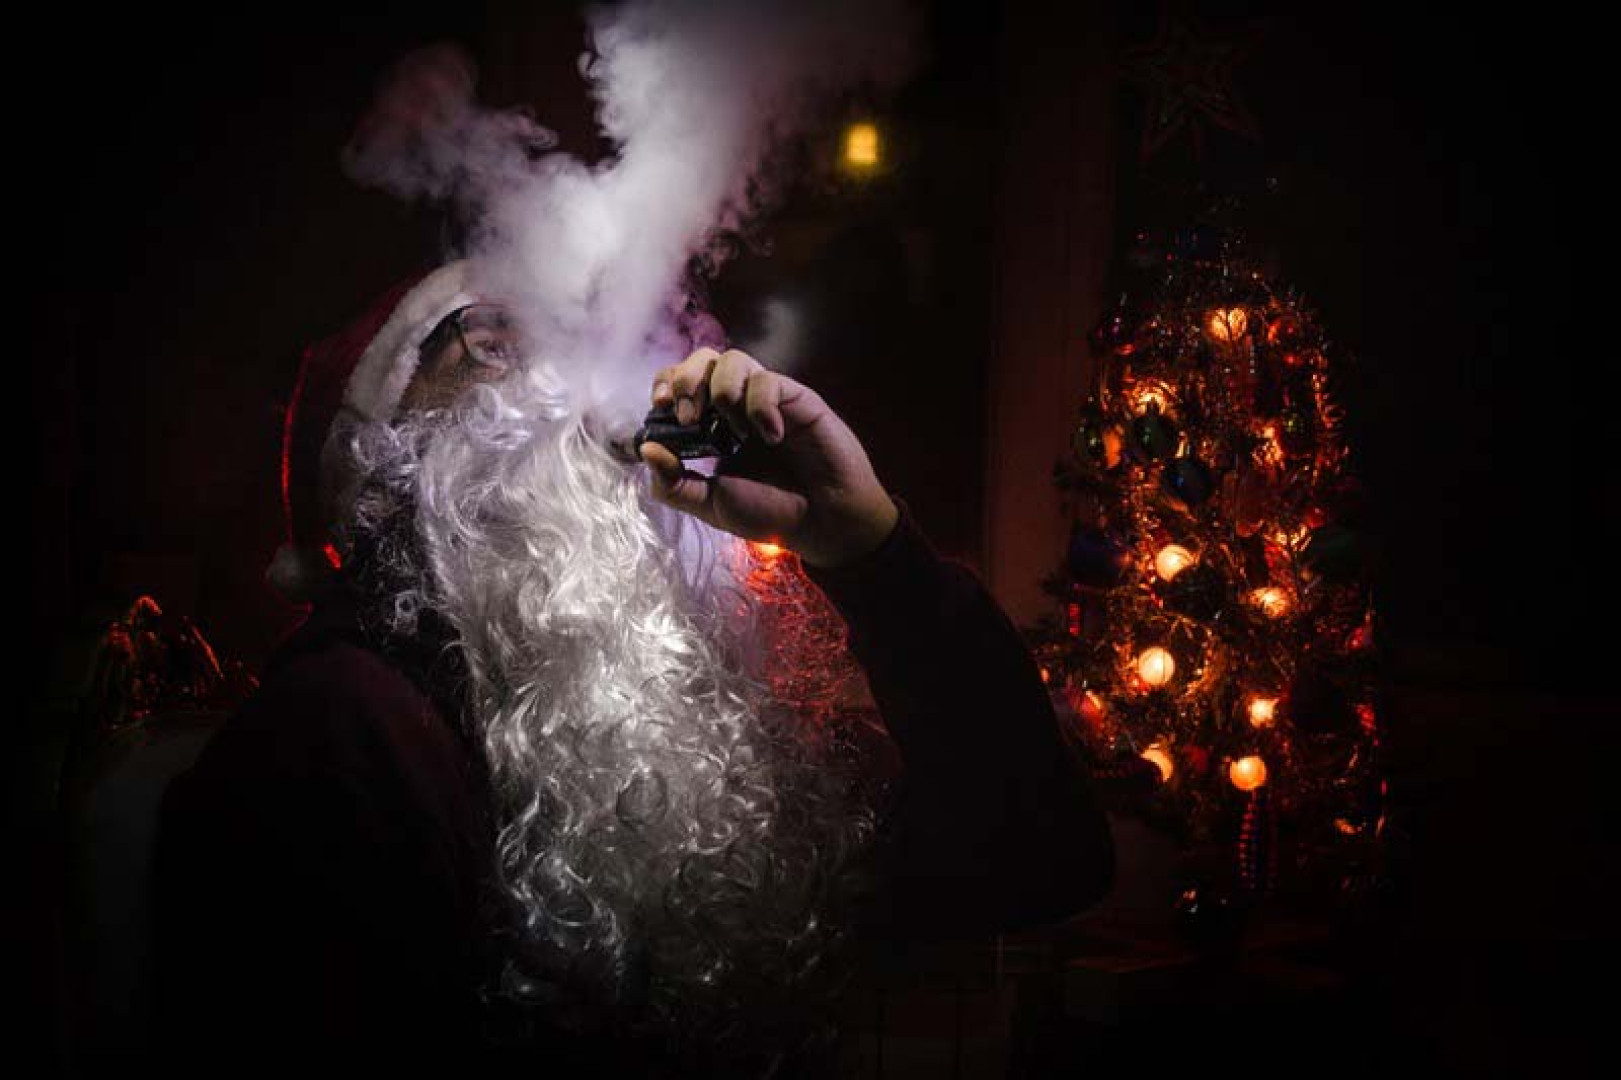 Rendeljen e-cigit karácsonyra!